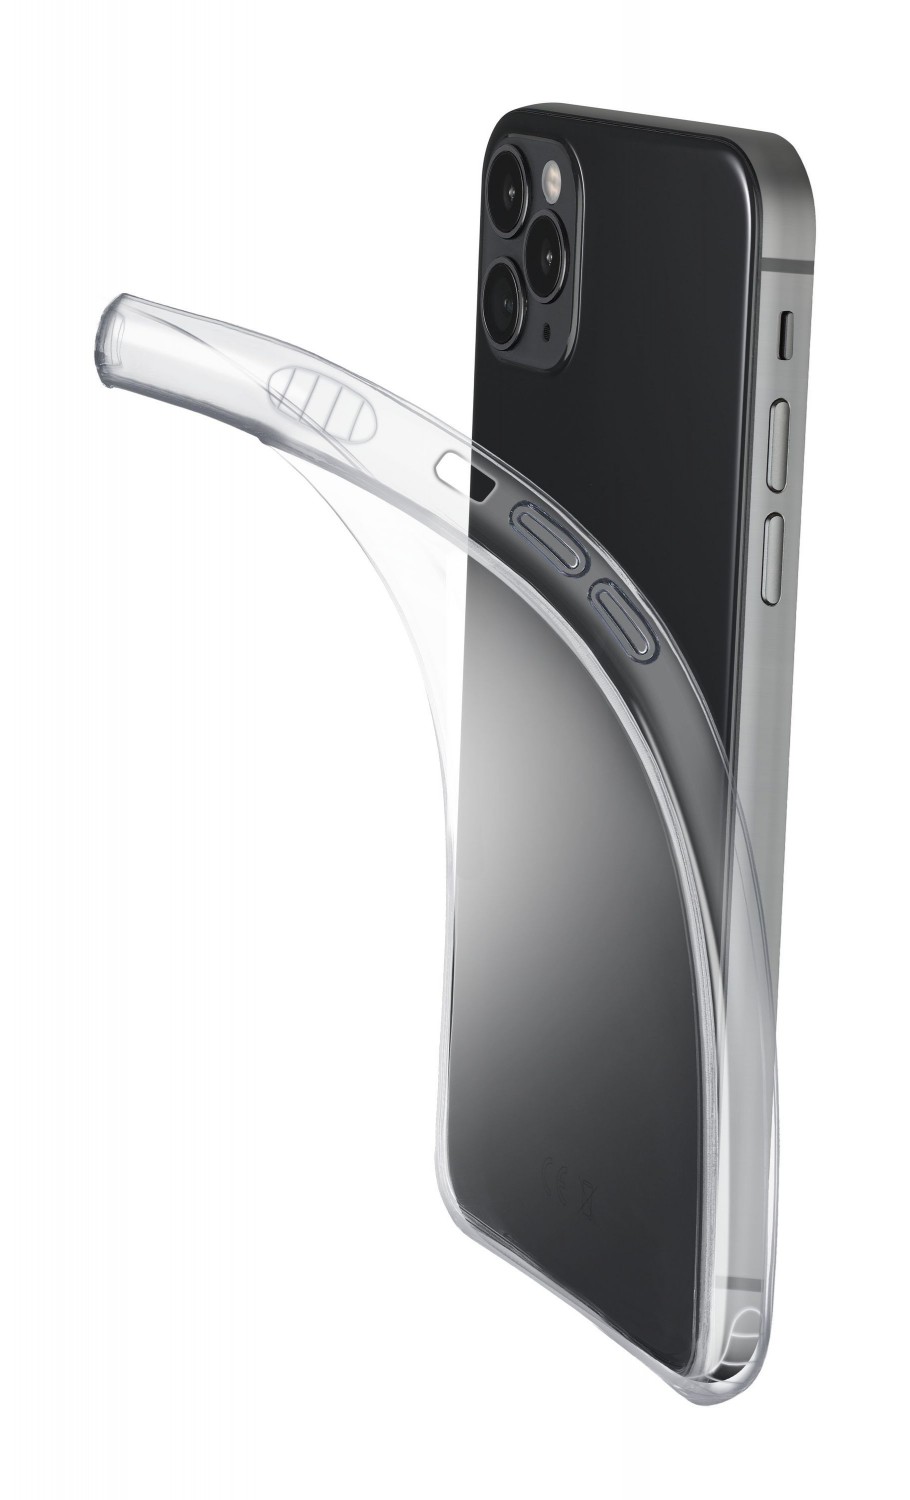 Cellularline Fine extratenký zadní kryt Apple iPhone 12 Pro Max transparent